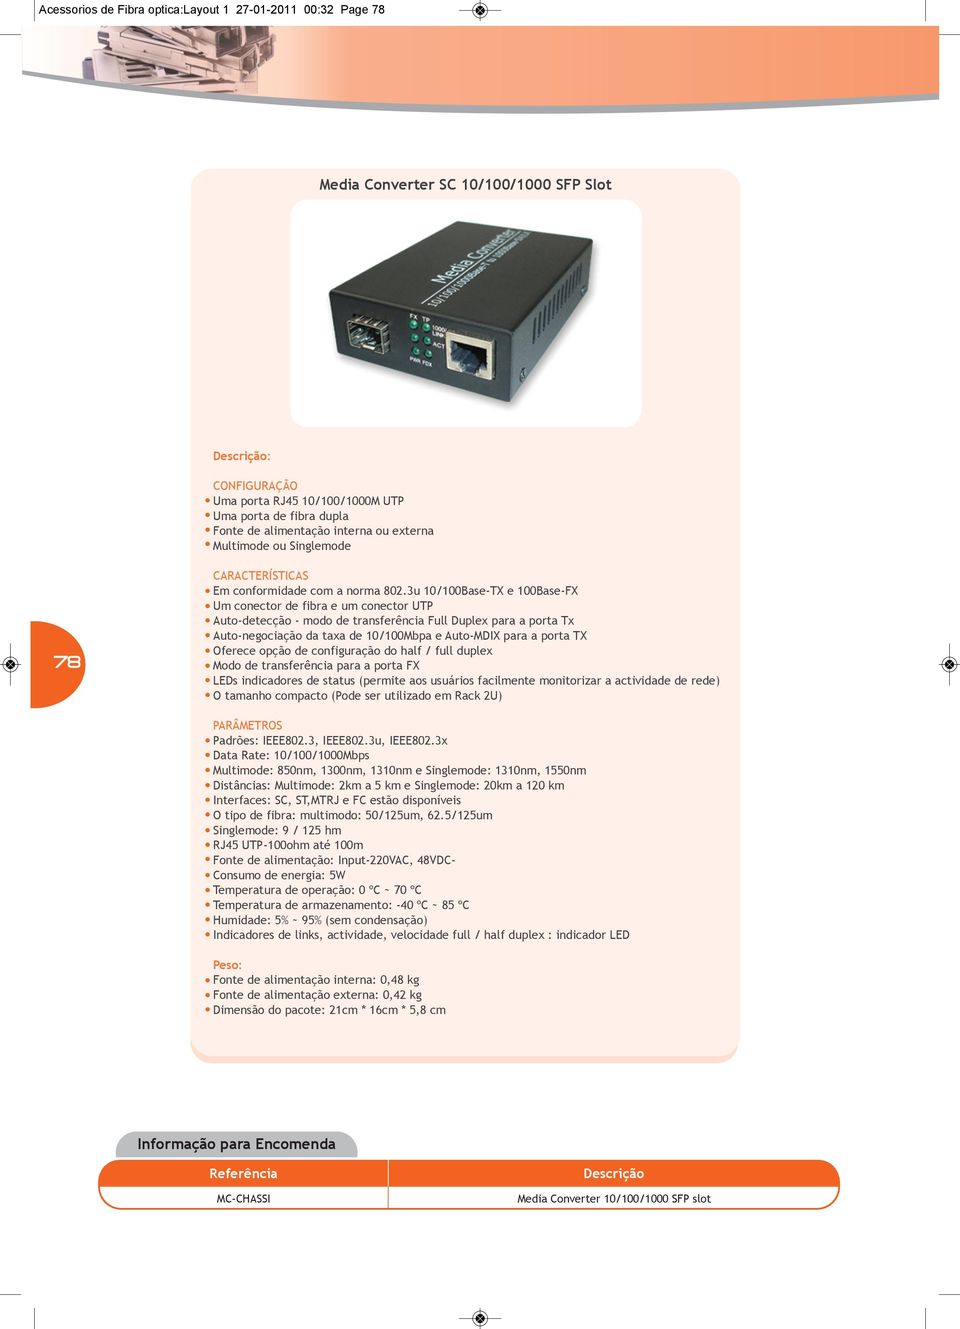 3u 10/100Base-TX e 100Base-FX Um conector de fibra e um conector UTP Auto-detecção - modo de transferência Full Duplex para a porta Tx Auto-negociação da taxa de 10/100Mbpa e Auto-MDIX para a porta